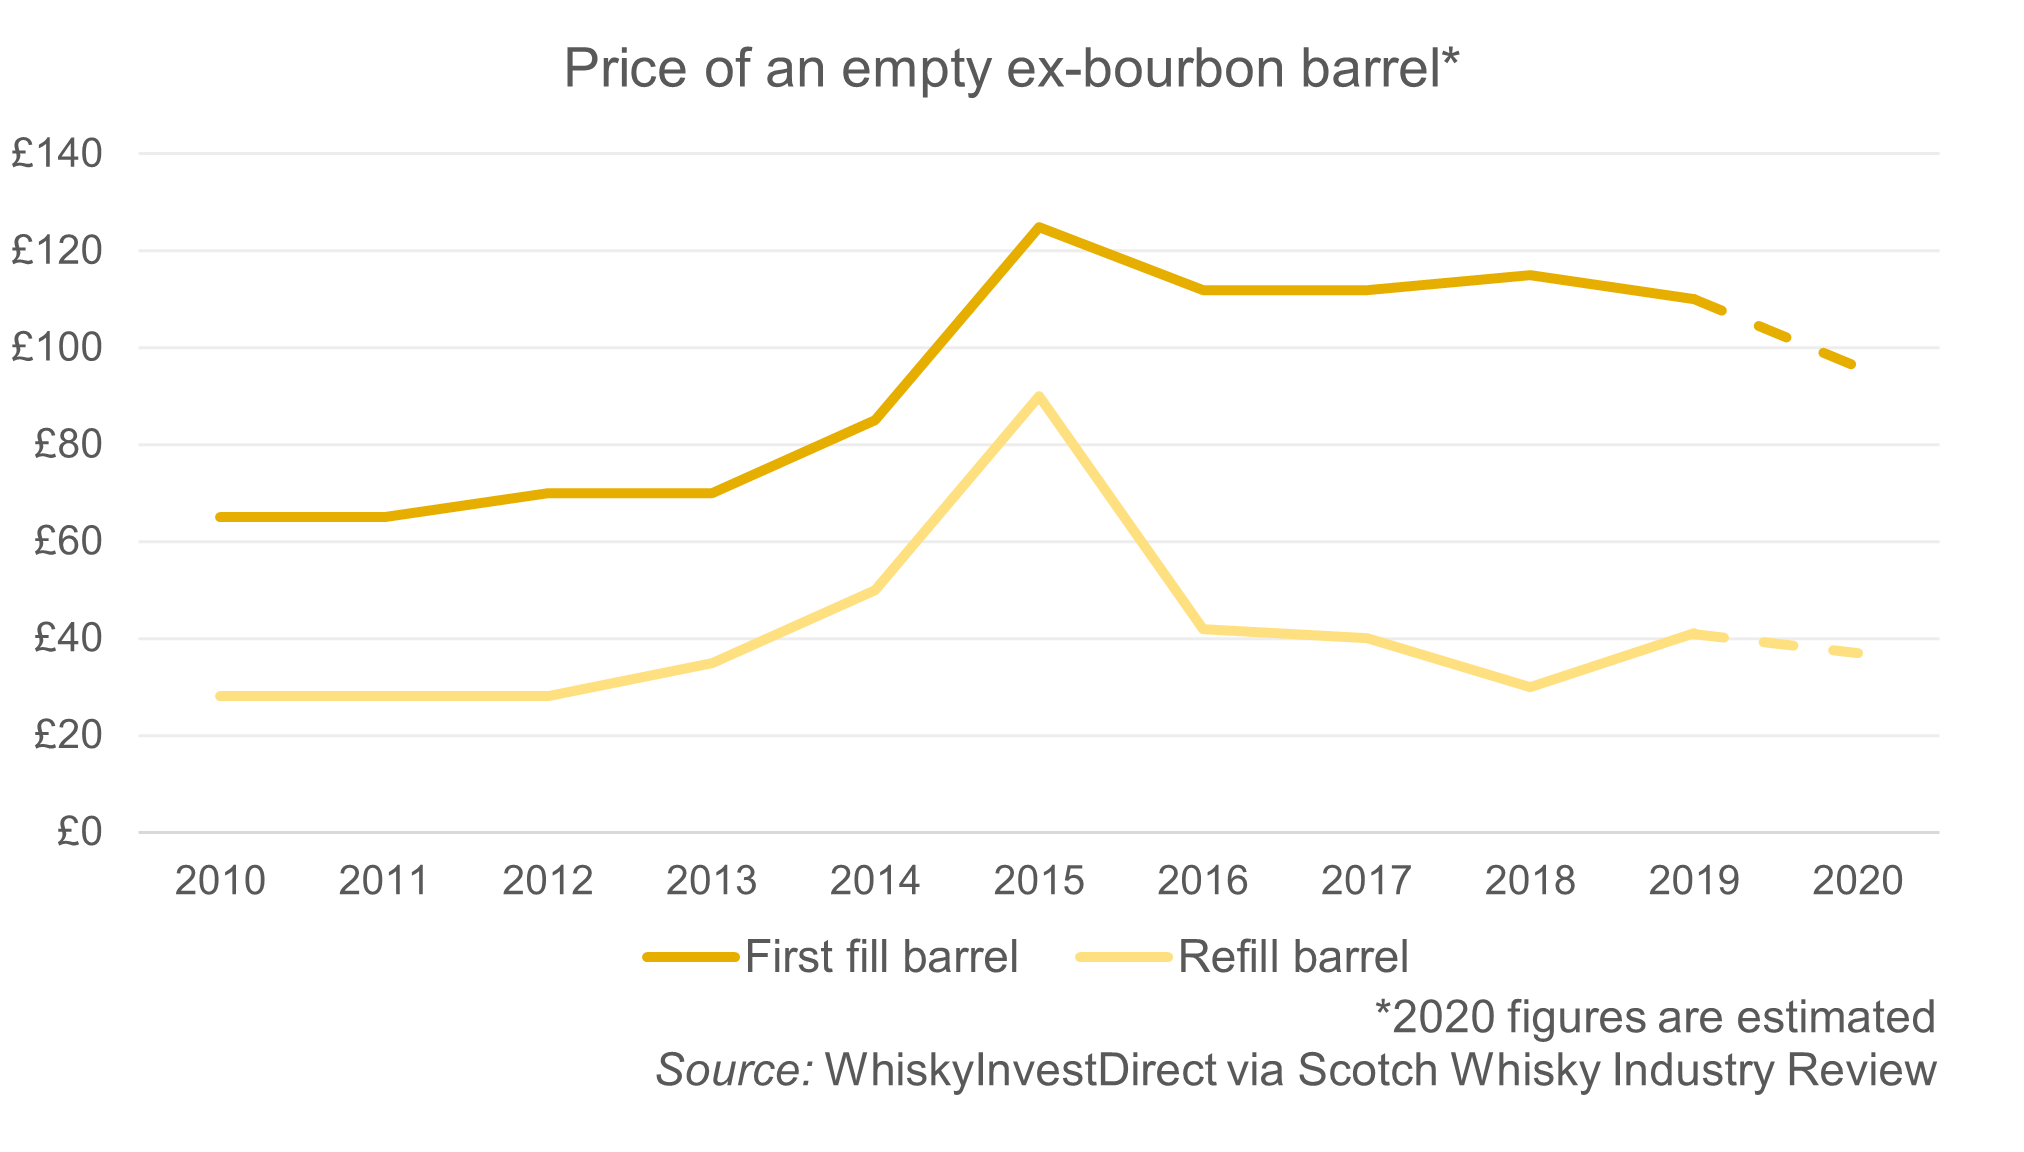 Fluctuating barrel costs between 2010-2020